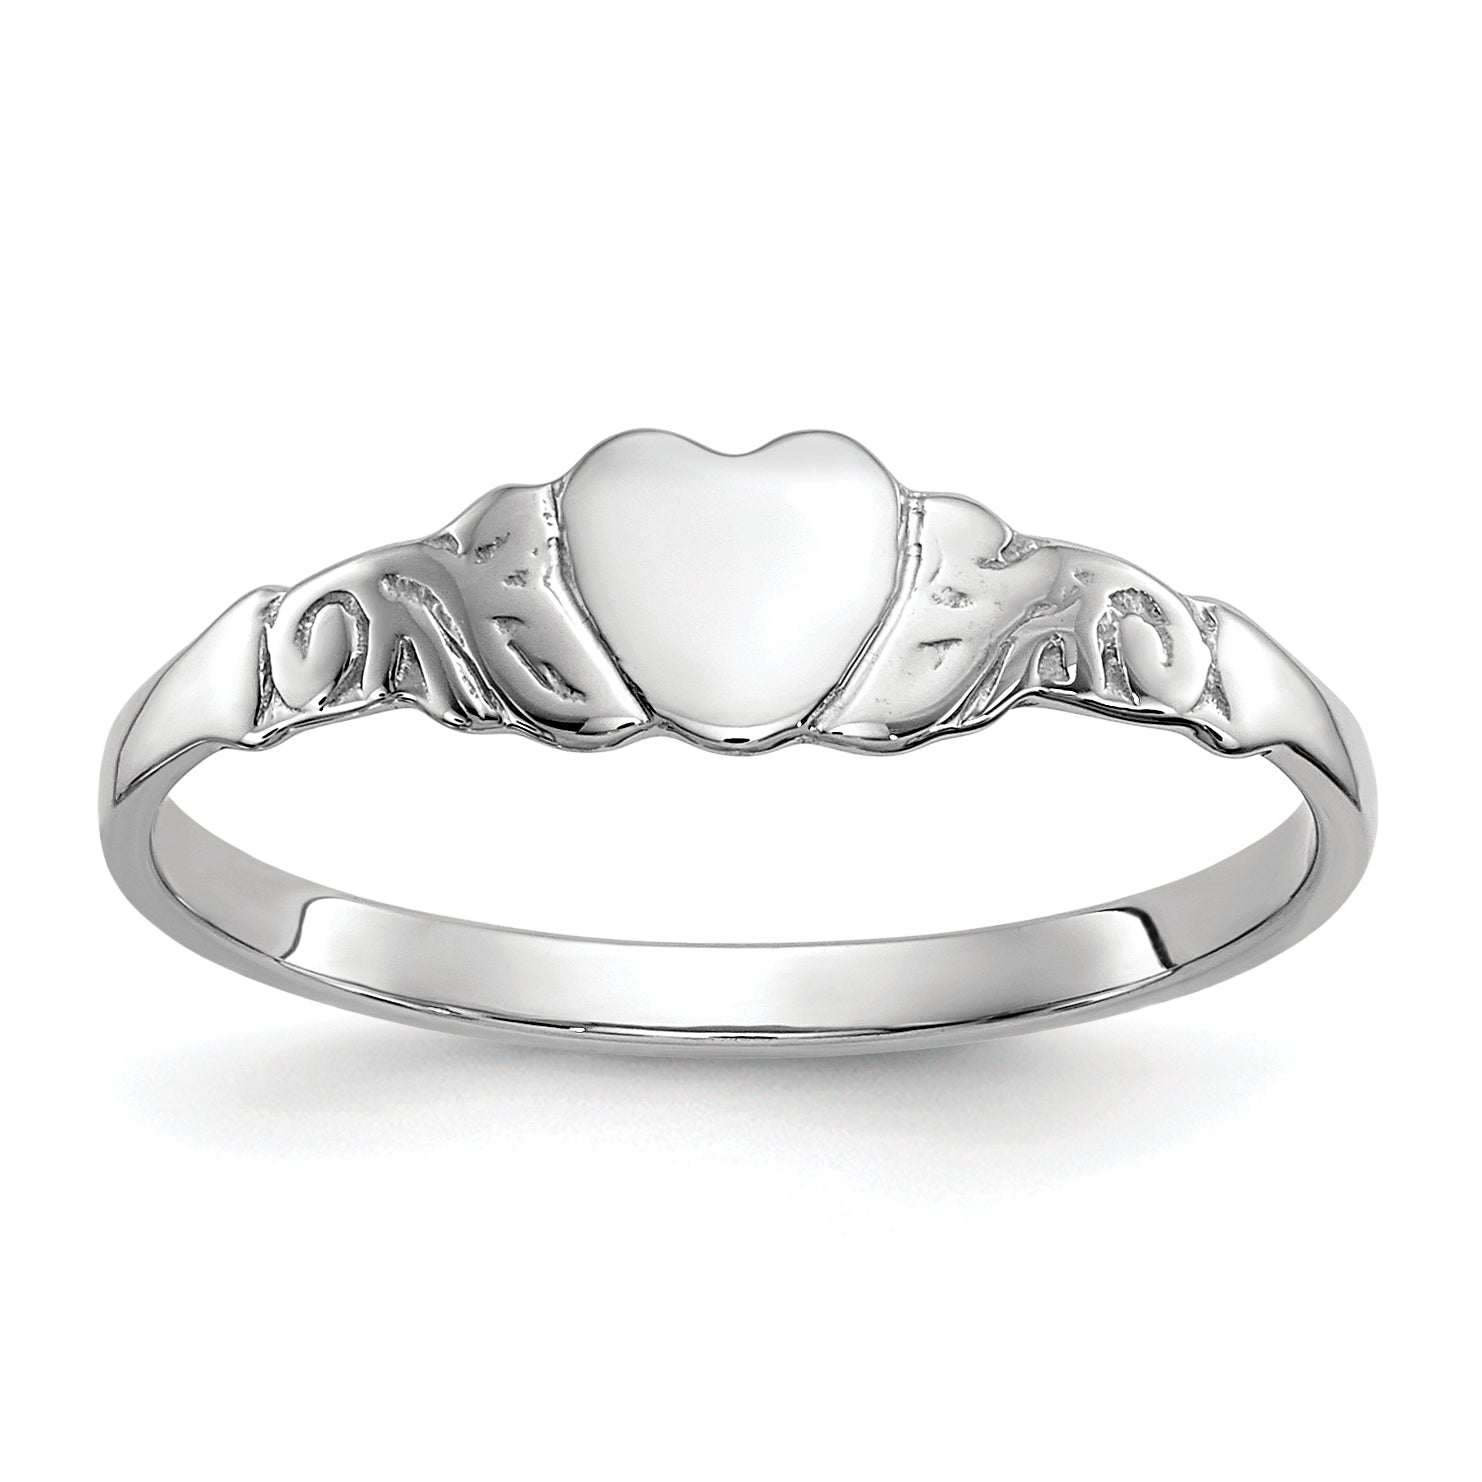 10k White Gold Heart Ring